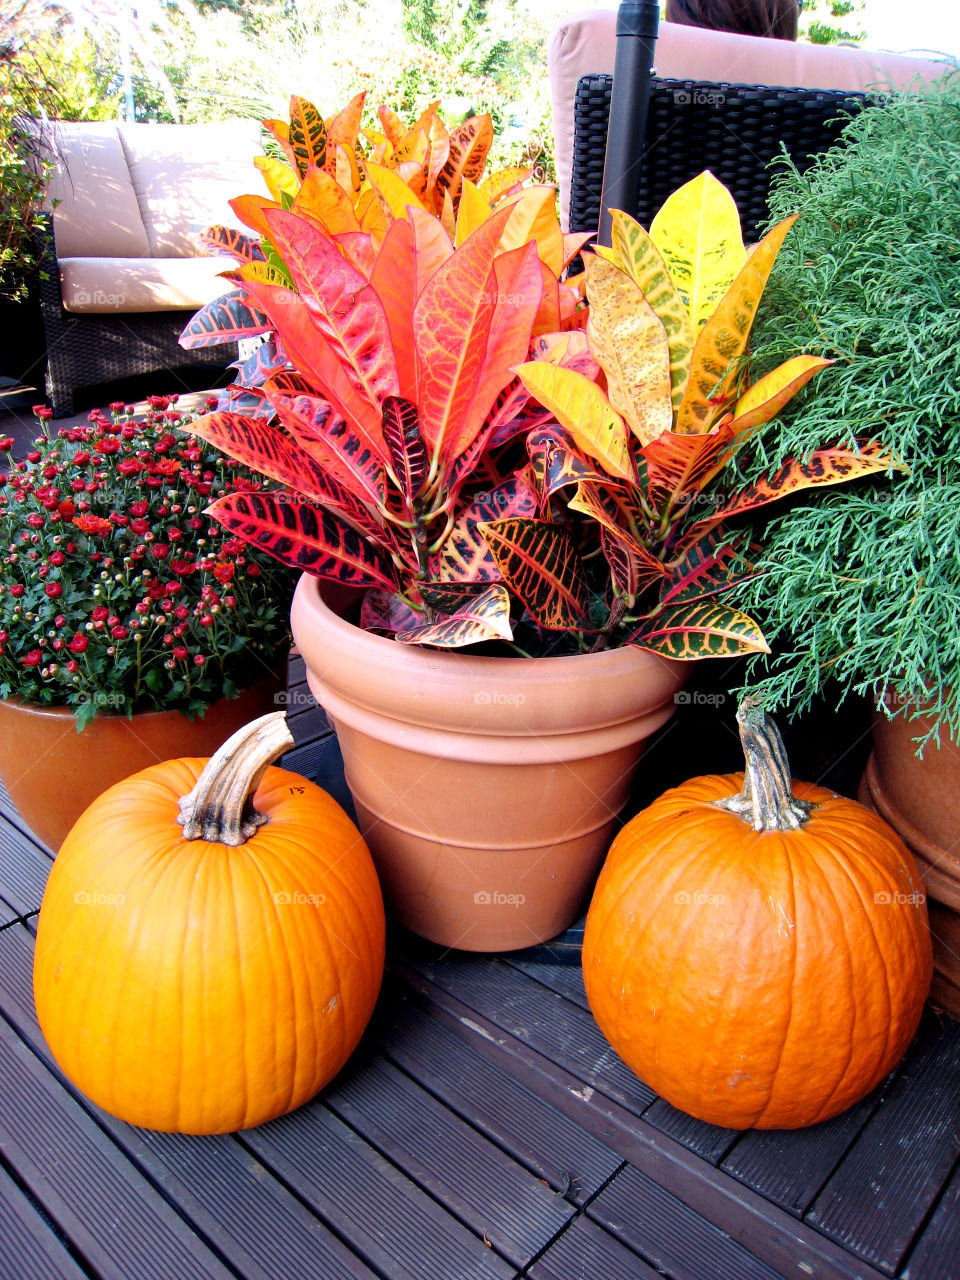 plants colors autumn pumpkins by vincentm